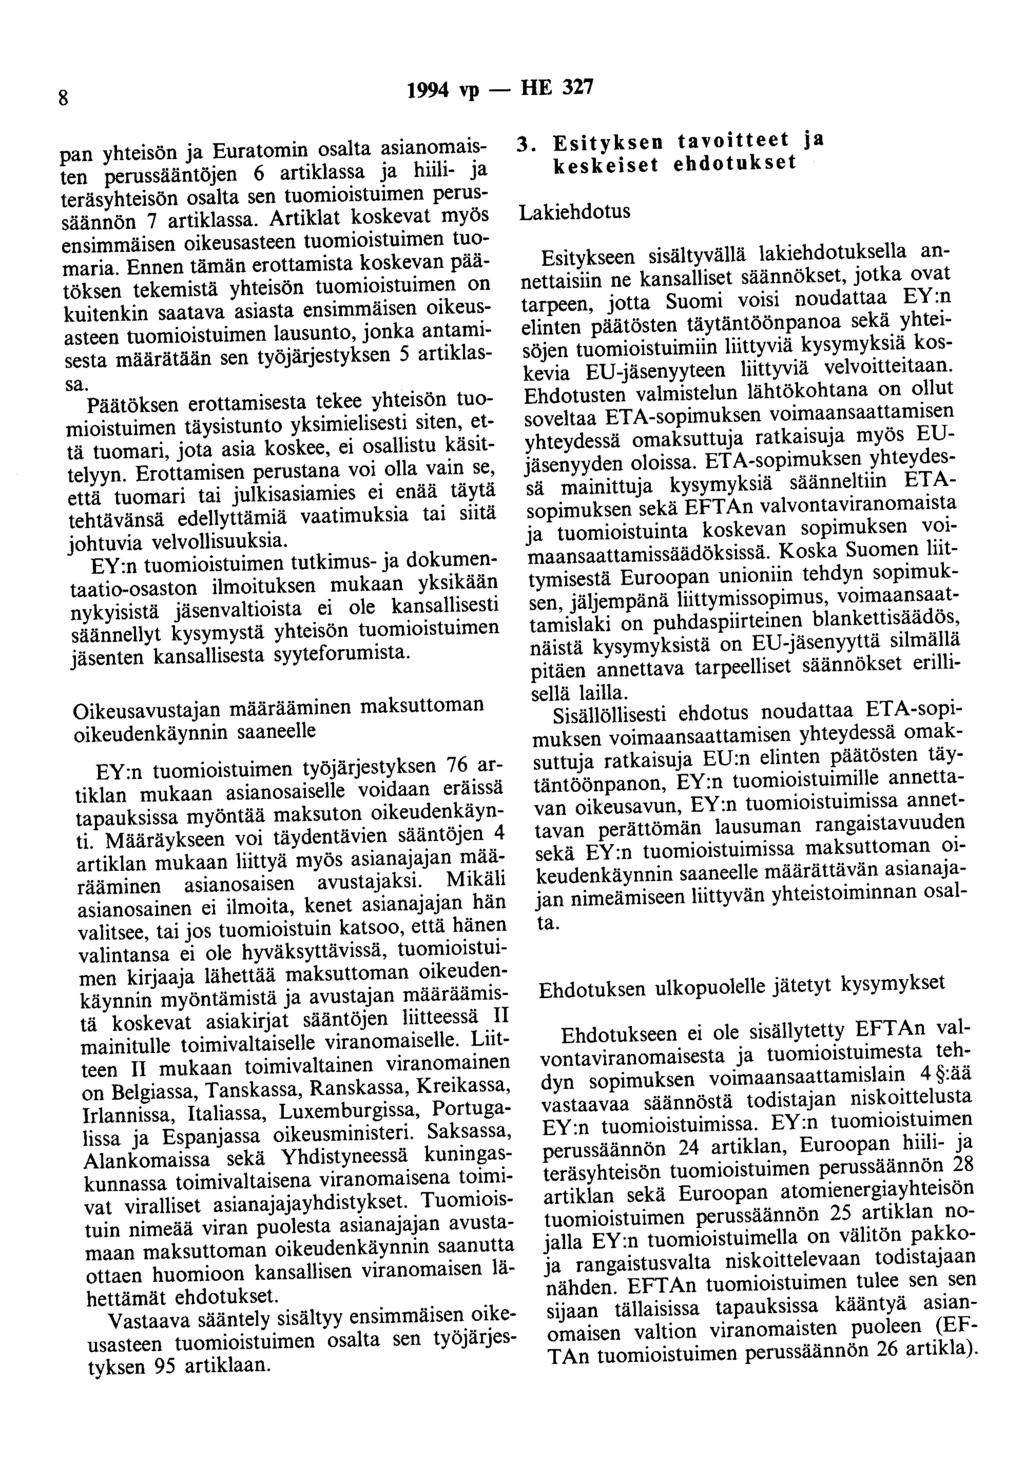 8 1994 vp - HE 327 pan yhteisön ja Euratomin osalta asianomaisten perussääntöjen 6 artiklassa ja hiili- ja teräsyhteisön osalta sen tuomioistuimen perussäännön 7 artiklassa.